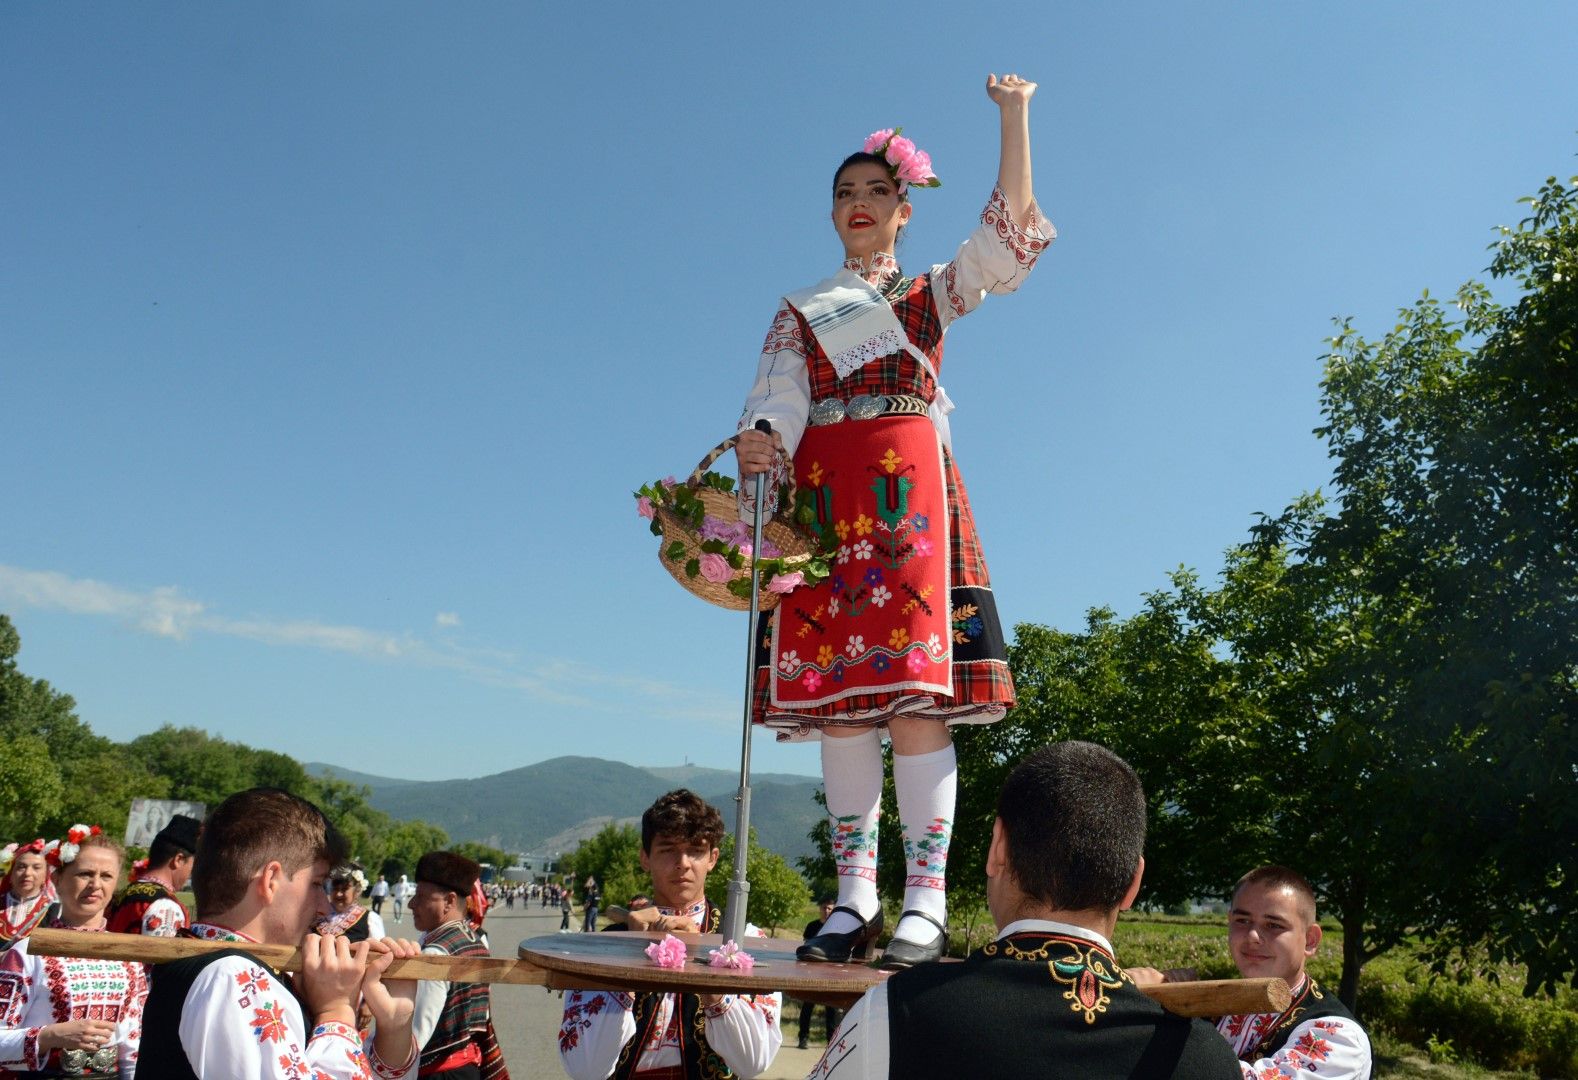 Казанлък (6 юни 2021) Автентичния ритуал розобер край Казанлък, събра гости и туристи от цял свят в розовите масиви край града. Събитието е част от 118-ия Празник на розата. 